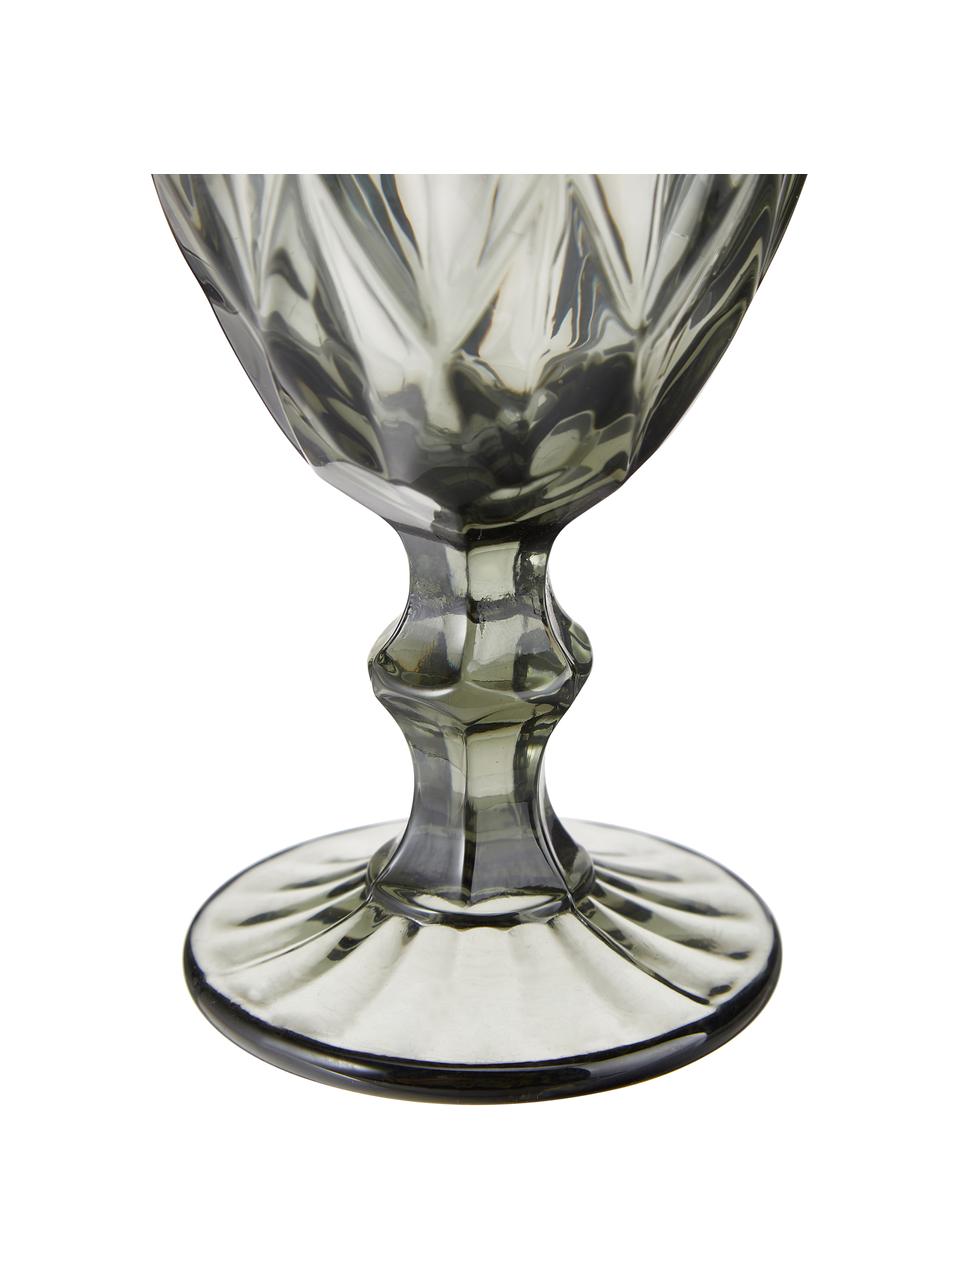 Copas de vino Colorado con patrón texturizado, 4 uds., Vidrio, Gris transparente, Ø 9 x Al 17 cm, 320 ml